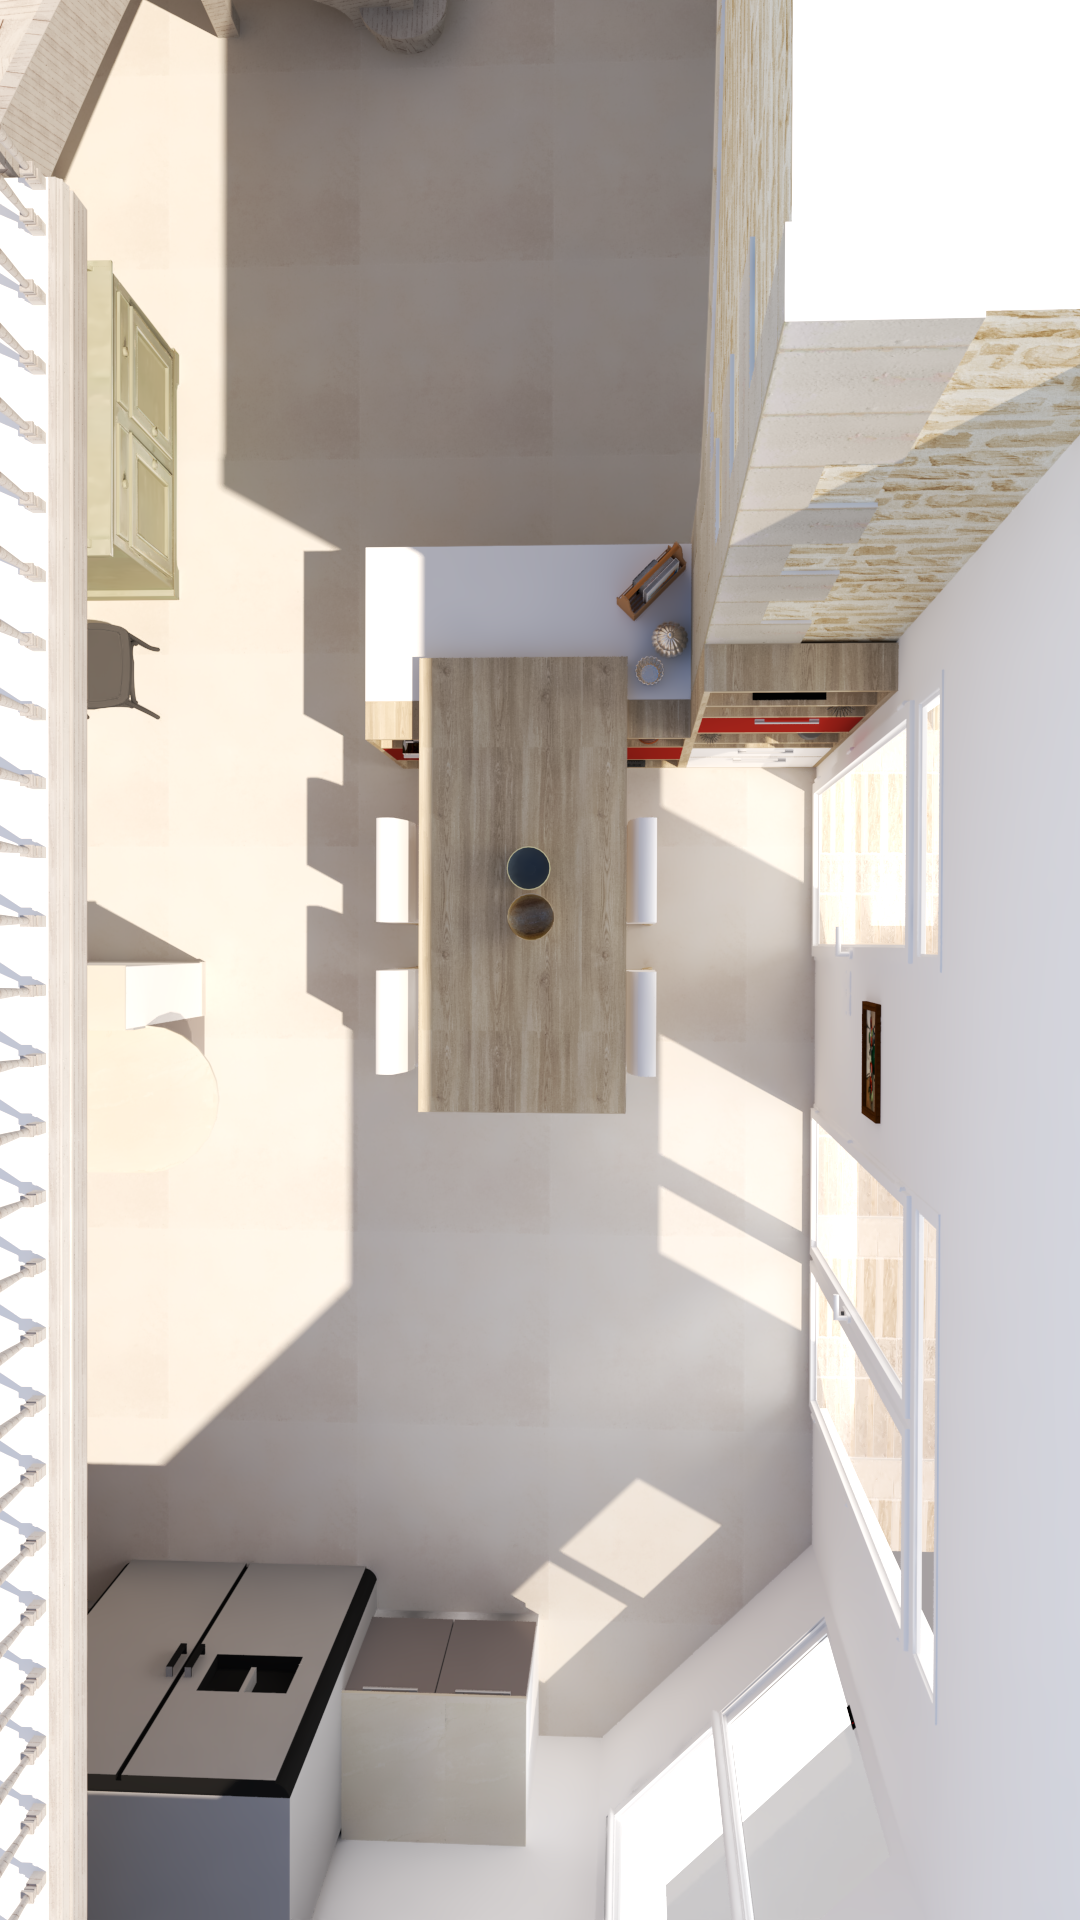 plan 3D design d'interieur poitiers